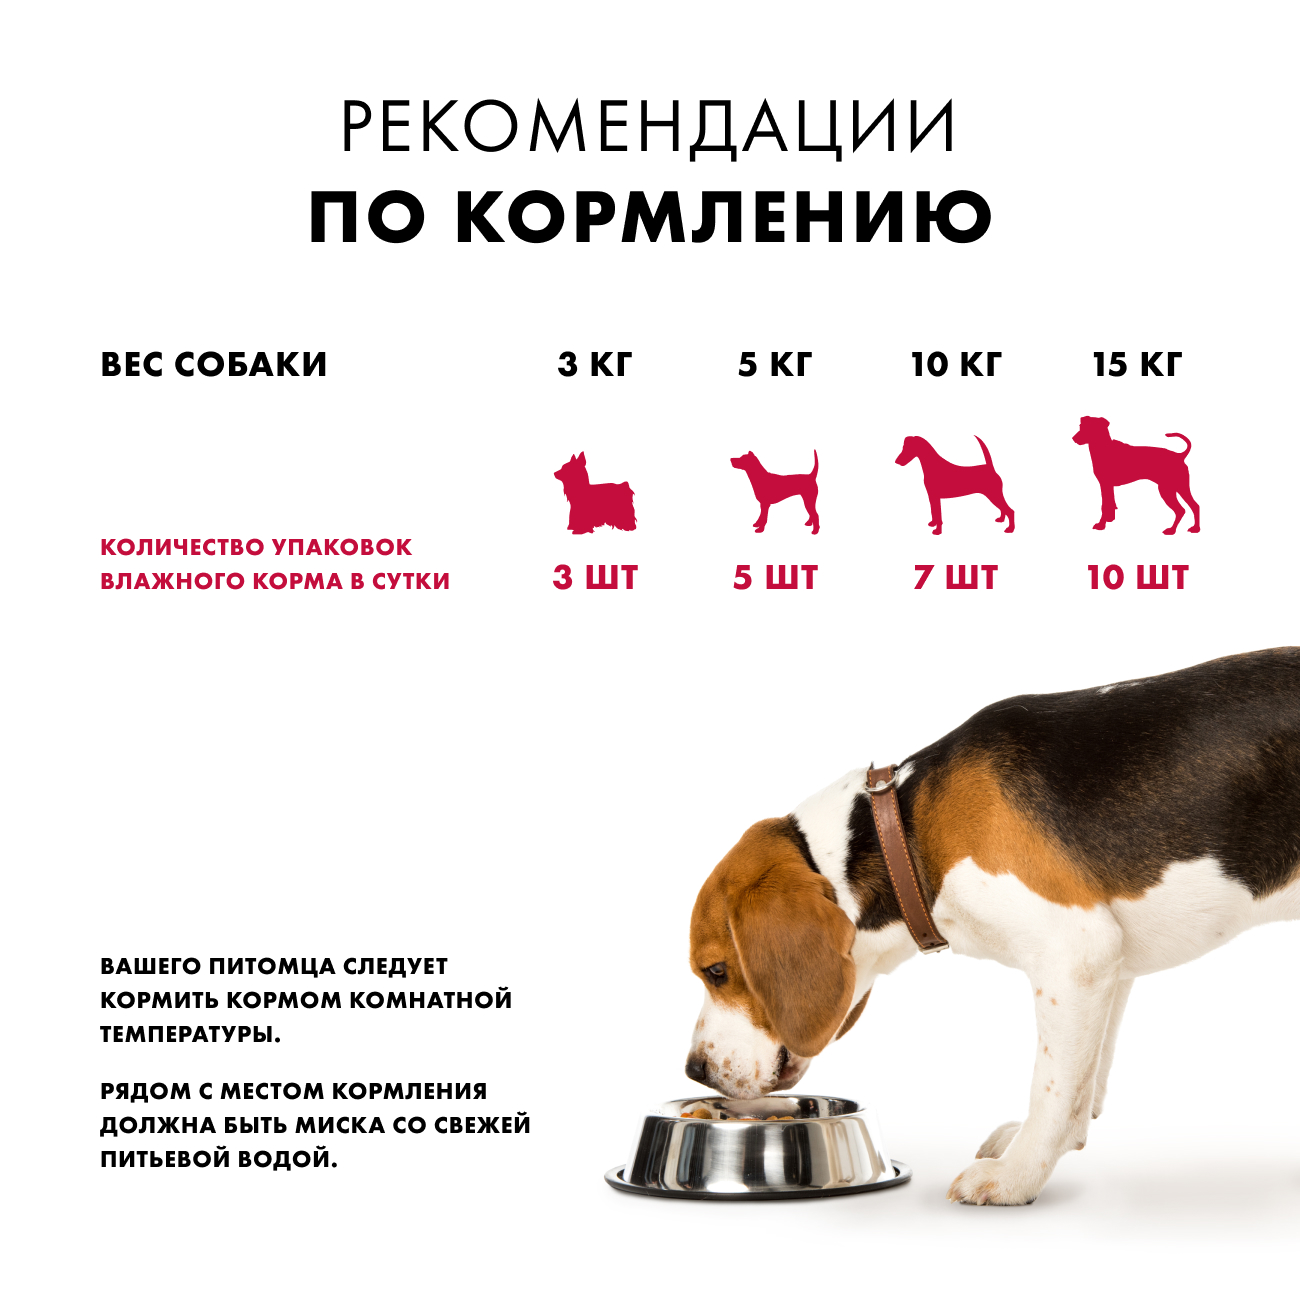 Влажный корм для собак Nutro Holistic беззерновой, говядина, томаты, 24шт по 85г